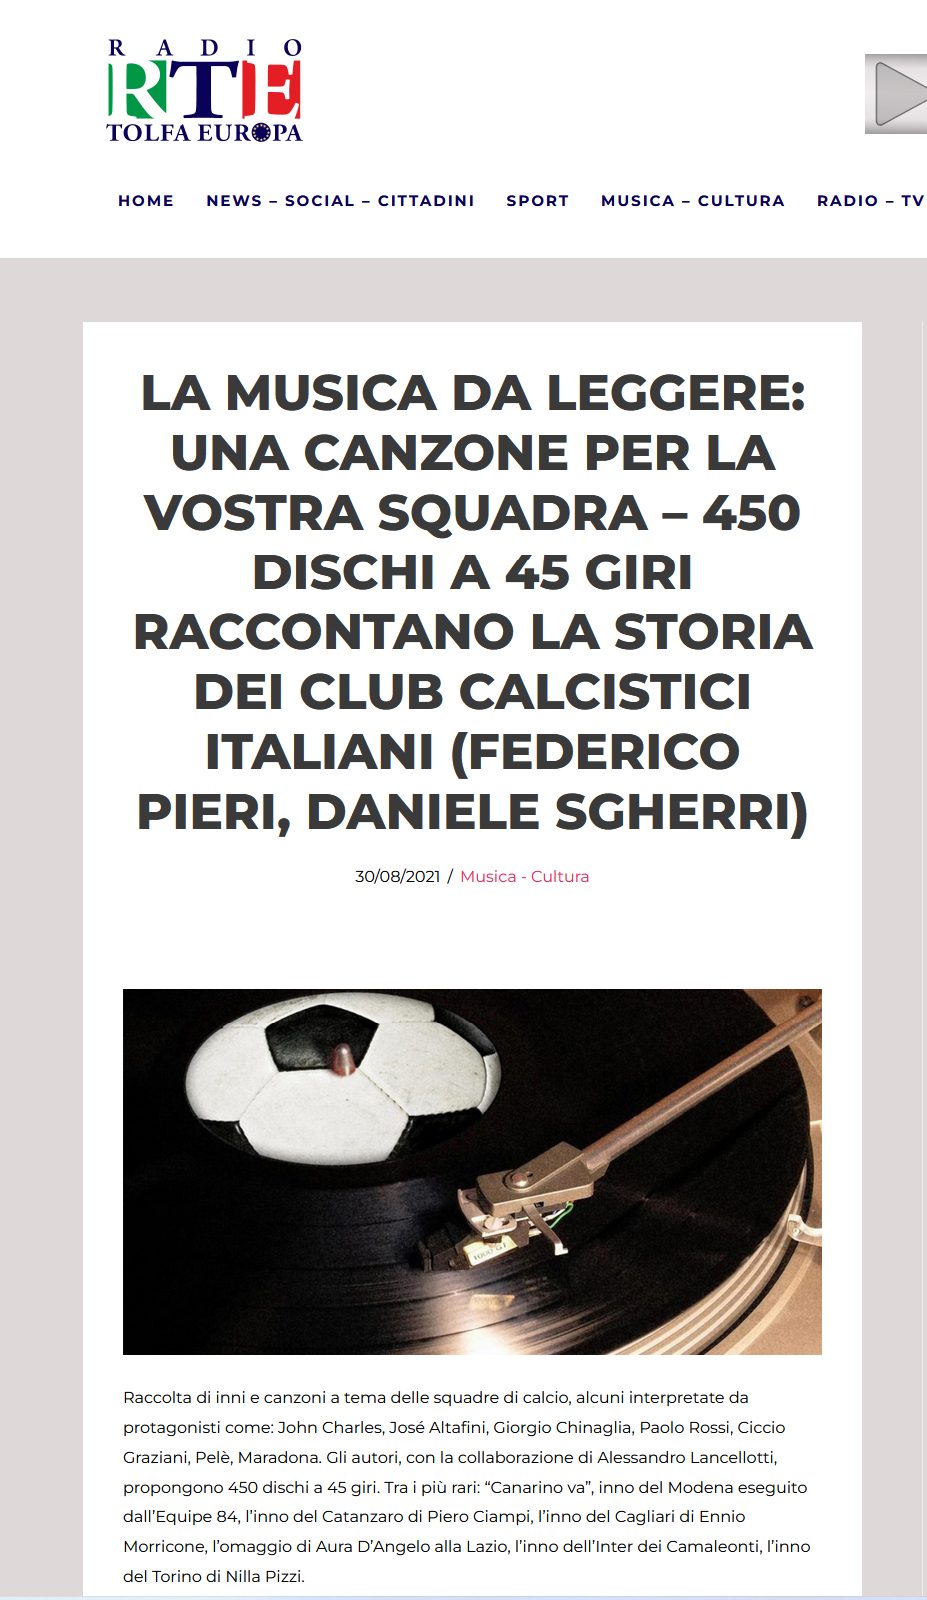 La musica da leggere: Una canzone per la Vostra Squadra – 450 dischi a 45 giri raccontano la storia del club calcistici italiani (Federico Pieri e Daniele Sgherri)